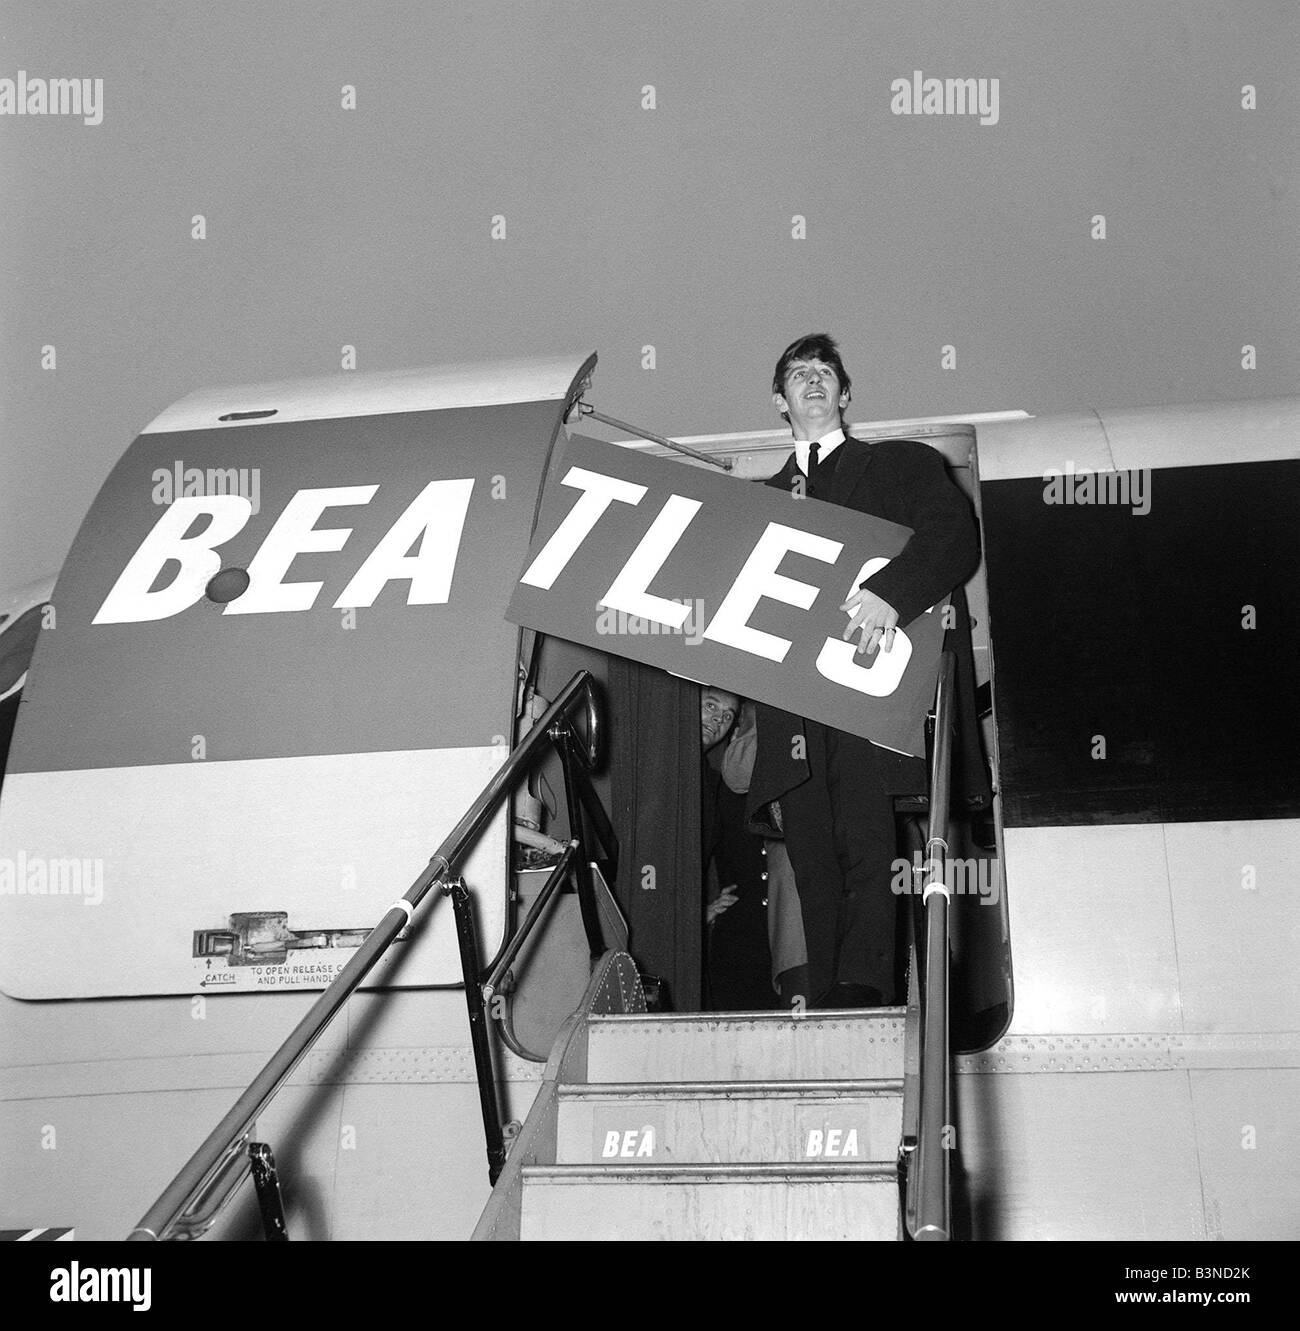 Januar 1964 Pop-Gruppe The Beatles Ringo Starr ein BEA Vanguard Flugzeug auf dem Weg nach Paris an den Rest des Beatles John Lennon Paul McCartneya und George Harrison Ringo Starr am Flugzeug Schritte mit BEA TLES Zeichen Stockfoto